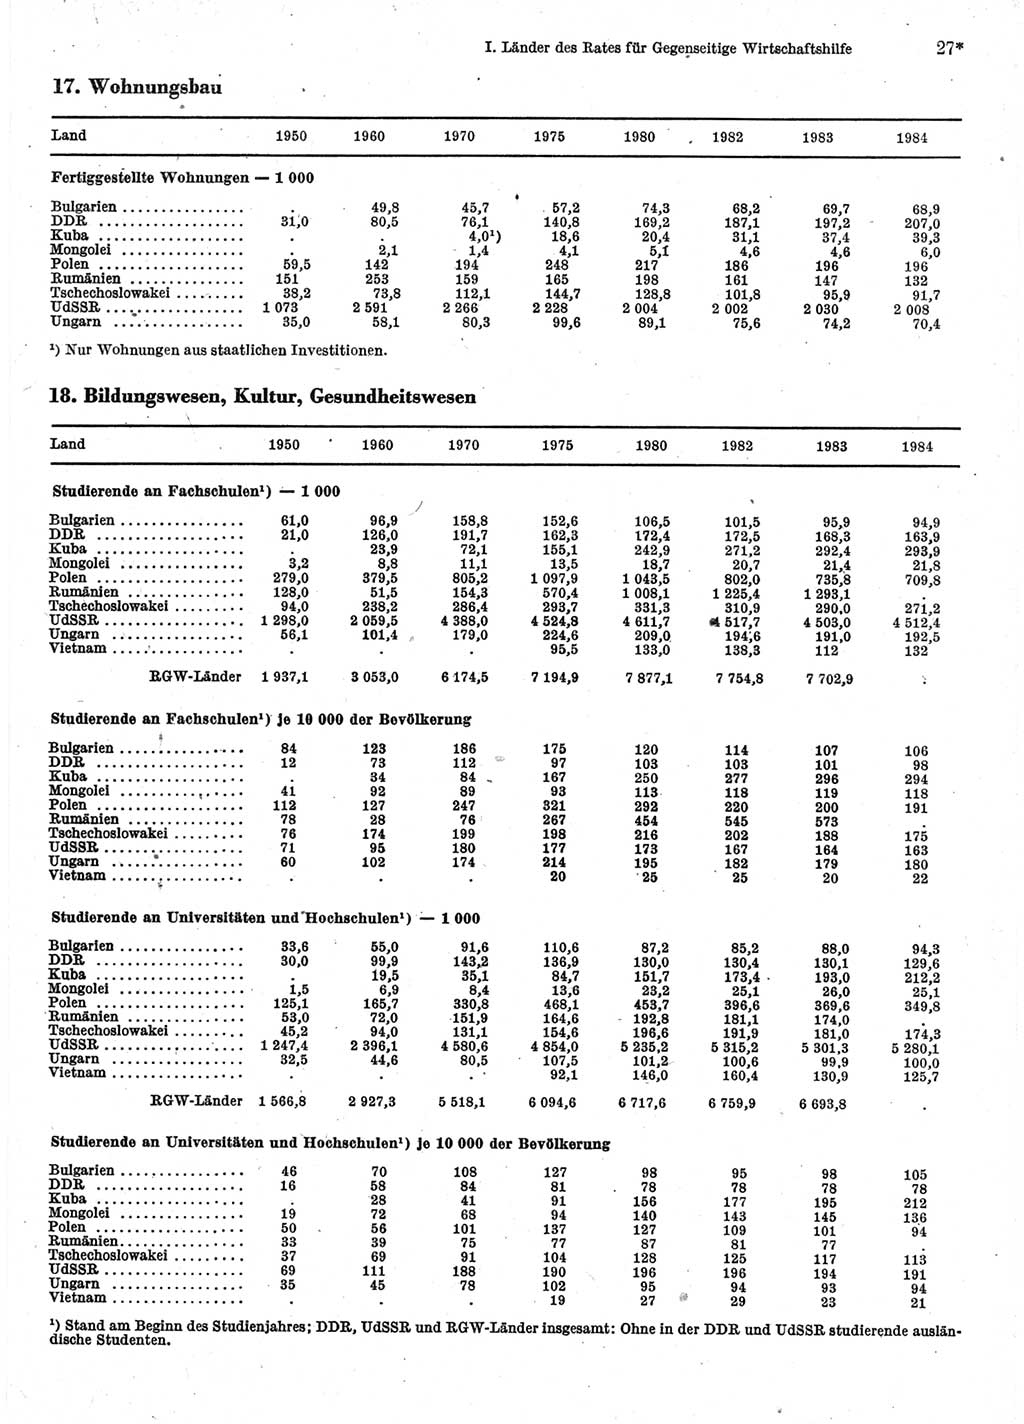 Statistisches Jahrbuch der Deutschen Demokratischen Republik (DDR) 1986, Seite 27 (Stat. Jb. DDR 1986, S. 27)